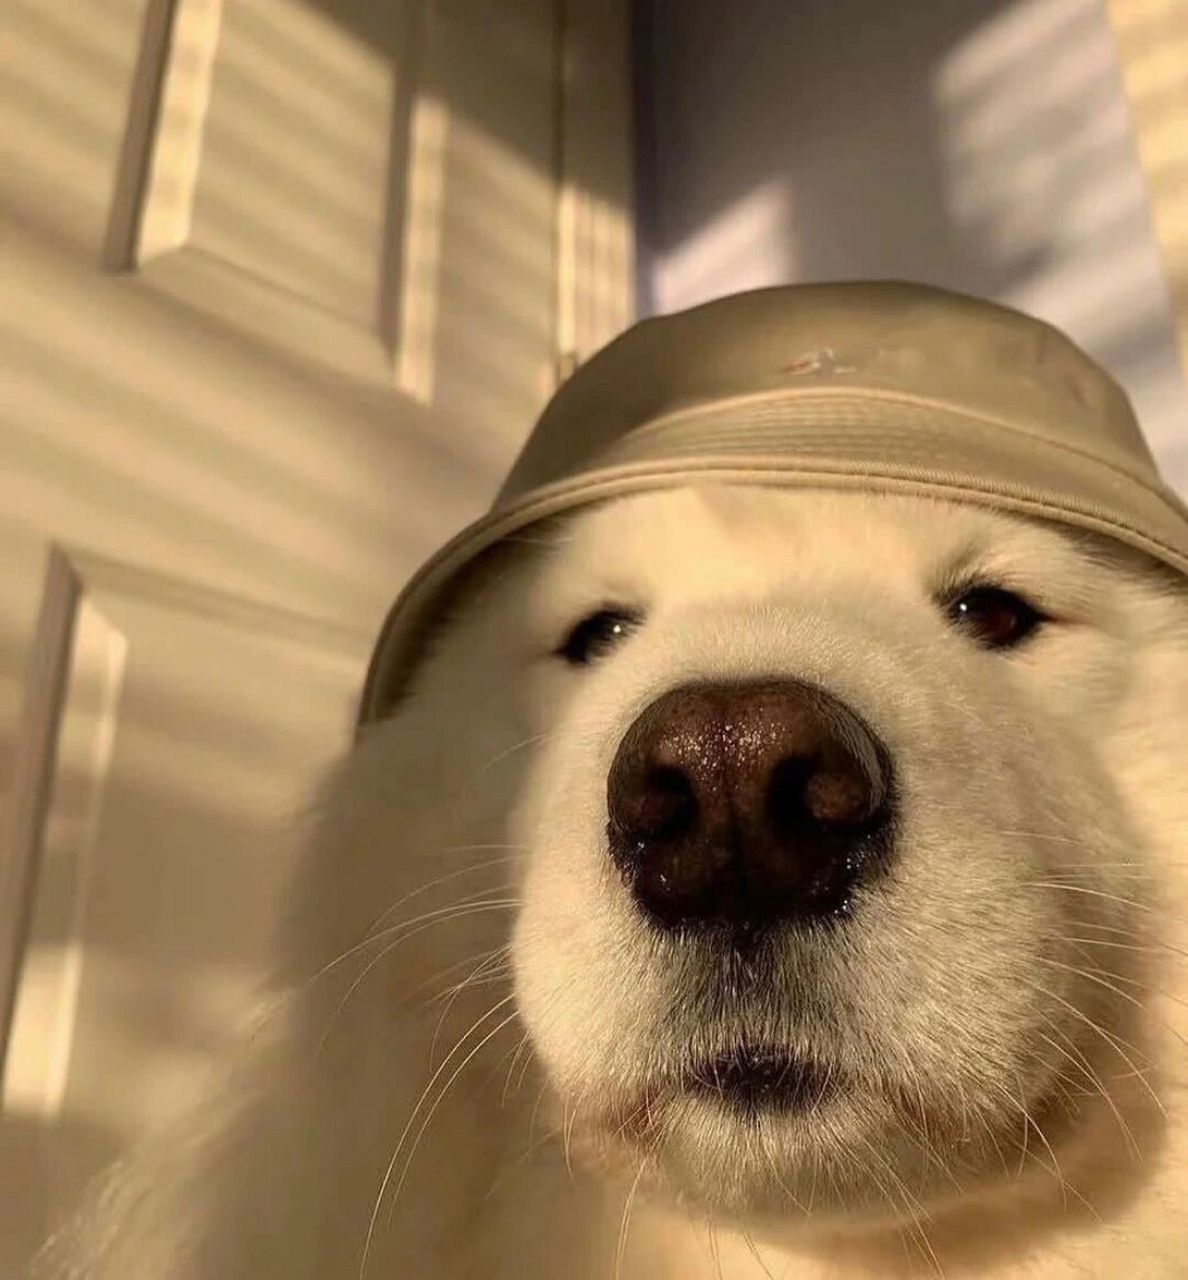 恶搞狗子系列表情包分享 狗子os:我不知道我狗不狗,反正你是真的狗